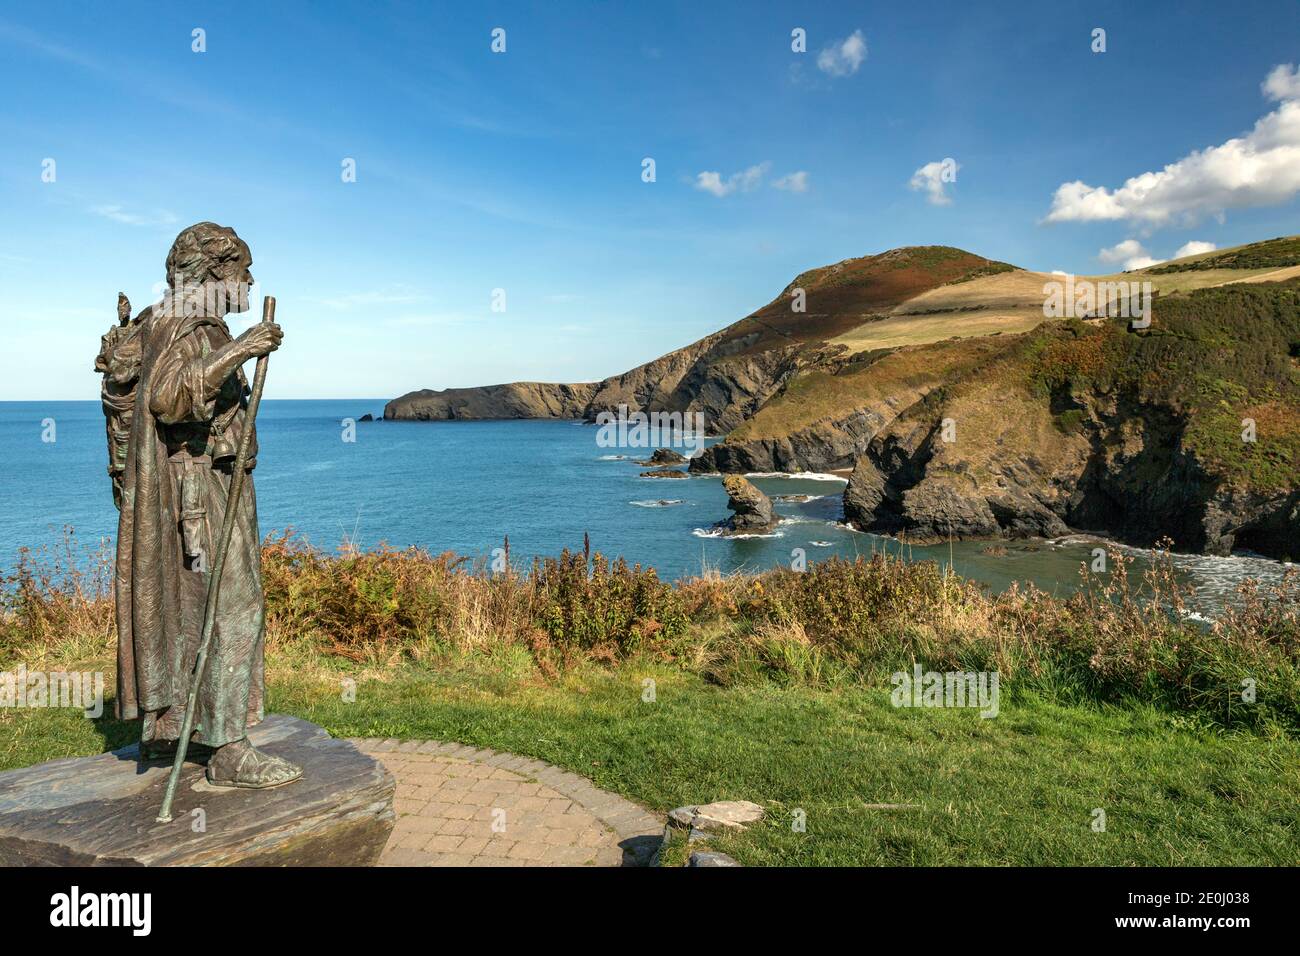 Die Statue des Heiligen Carannog wacht über die Bucht von Llangrannog, mit Bicas Zahn und der Landzunge von Ynys Lochtyn im Hintergrund. Stockfoto